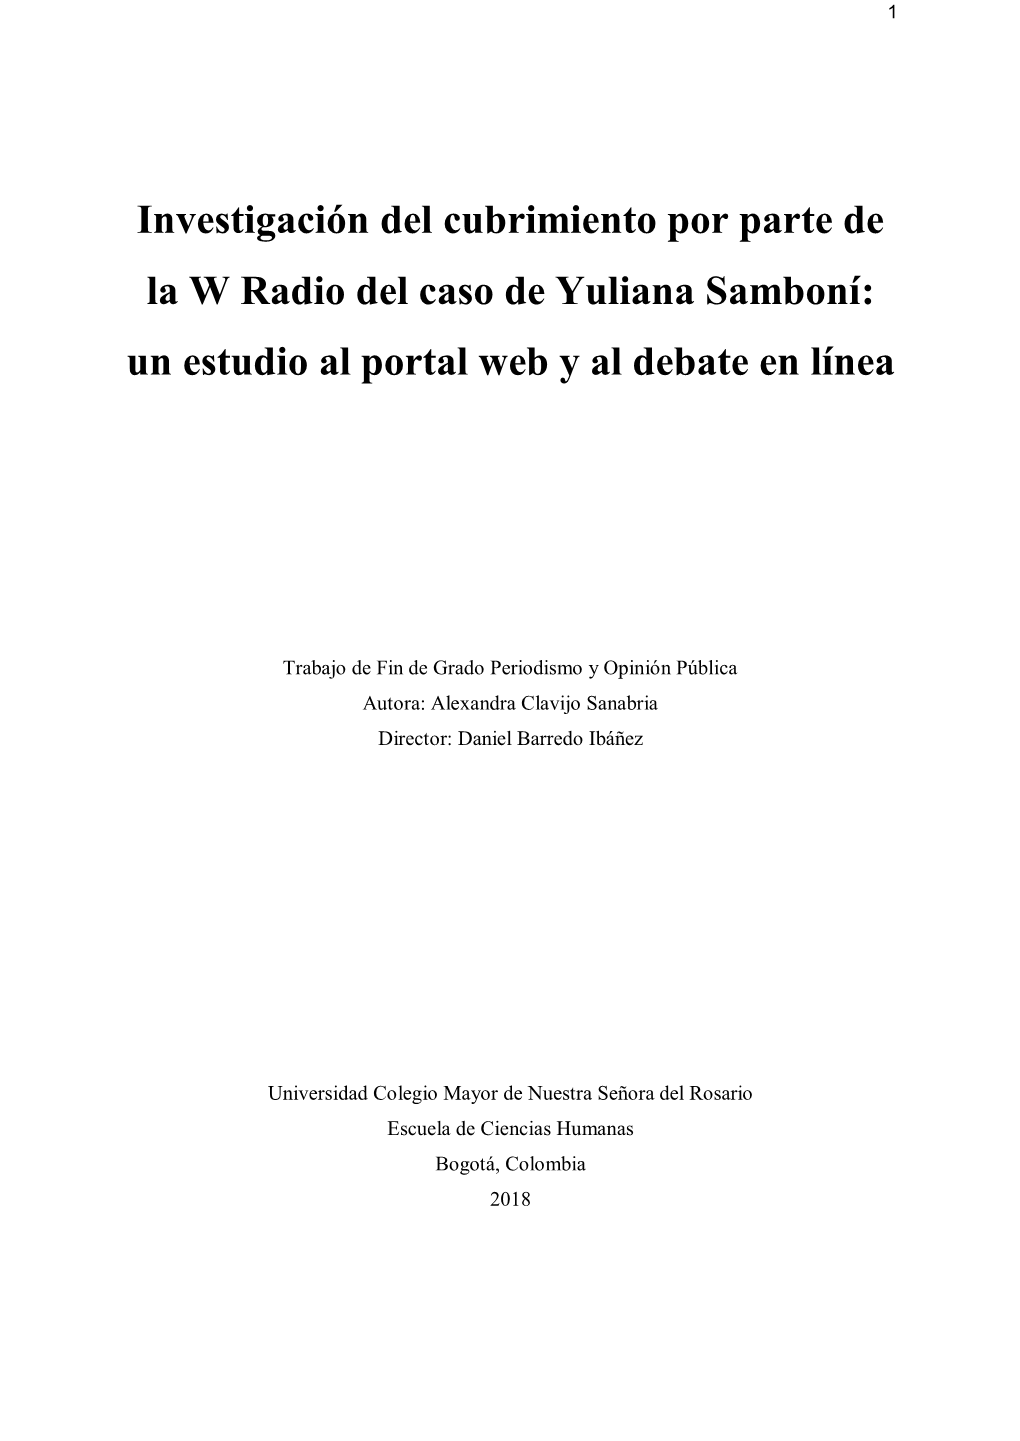 Investigación Del Cubrimiento Por Parte De La W Radio Del Caso De Yuliana Samboní: Un Estudio Al Portal Web Y Al Debate En Línea